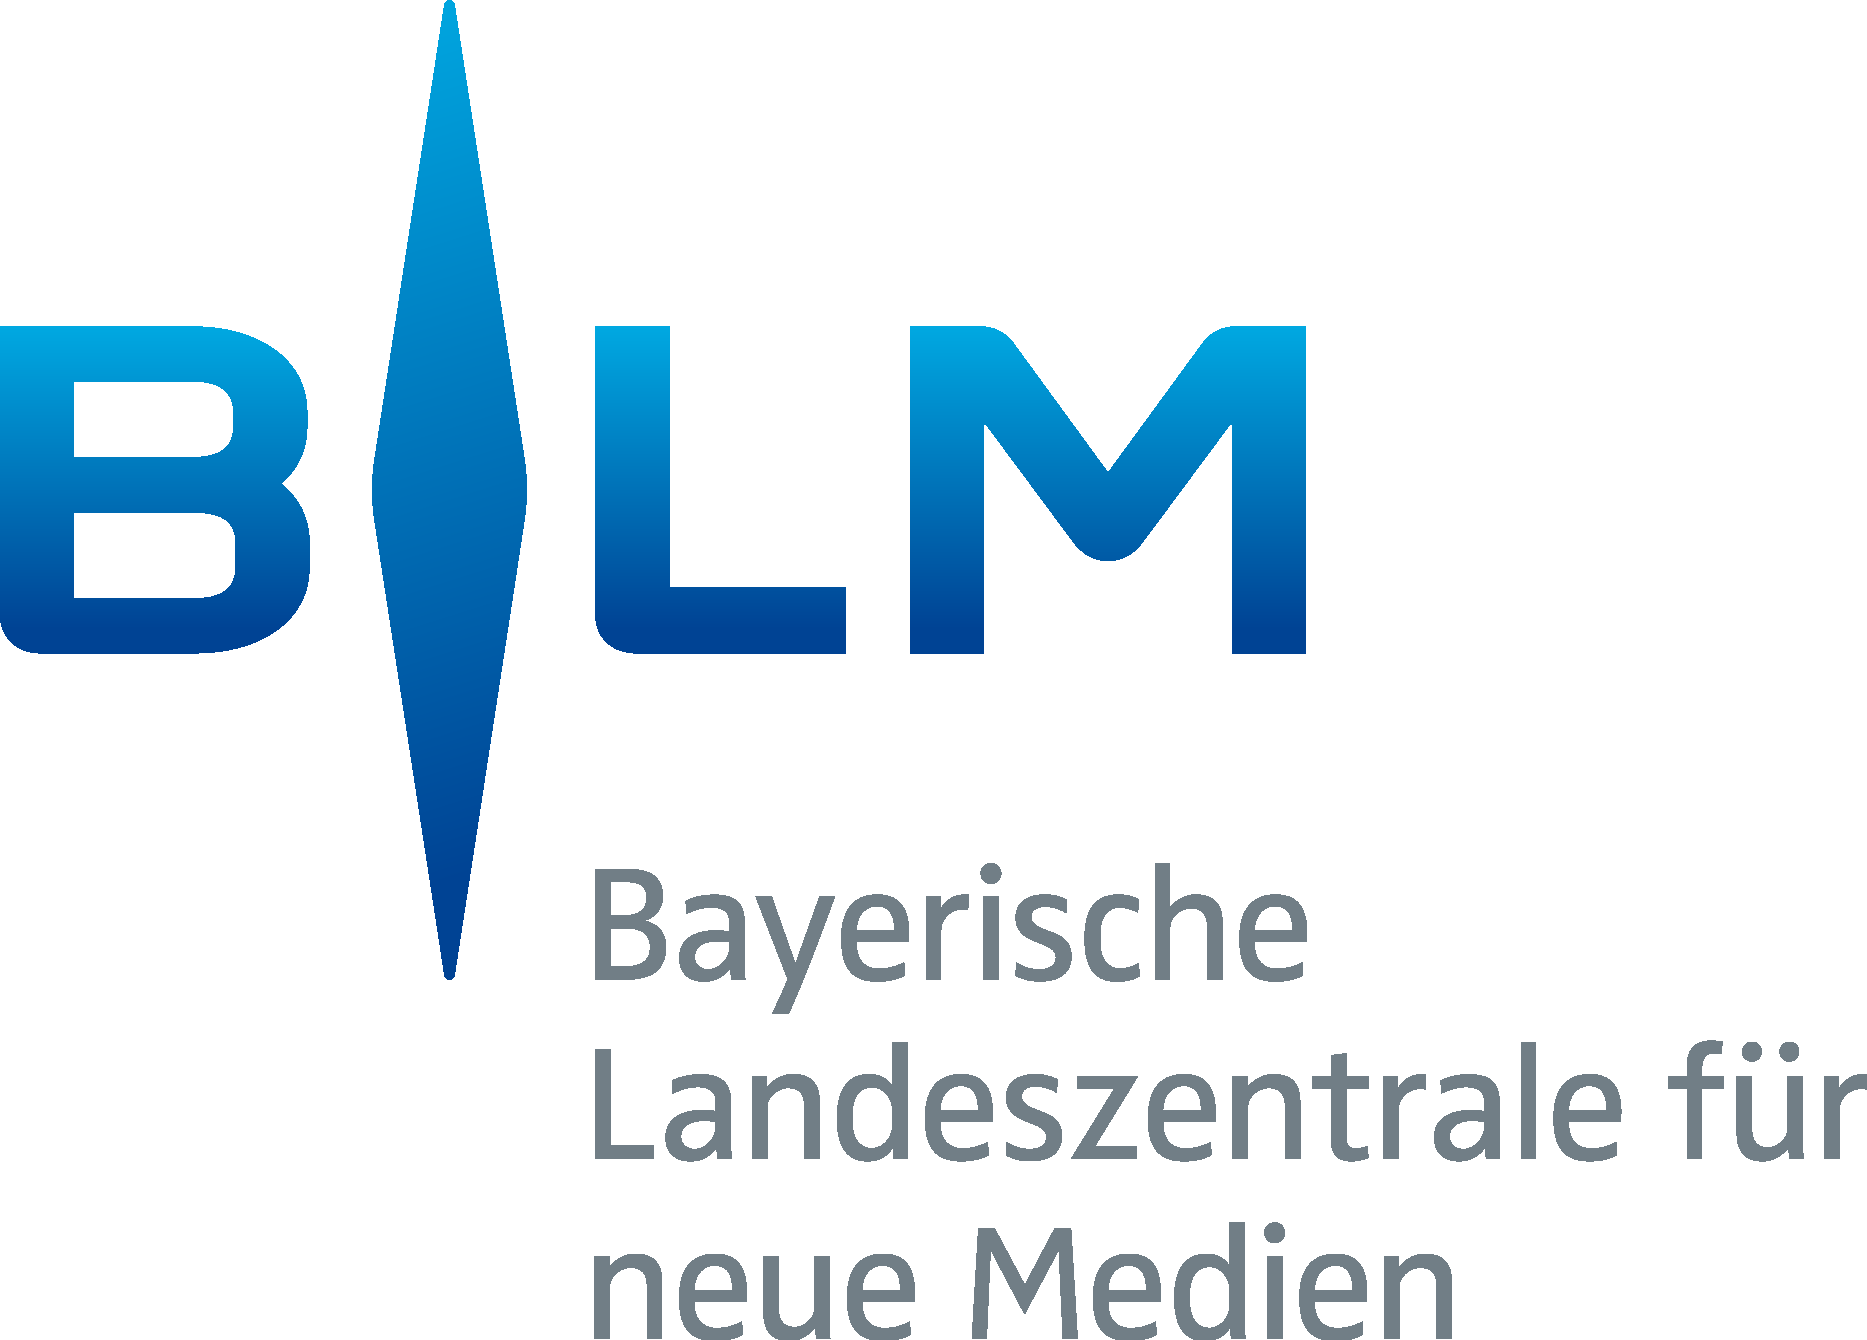 Bayerische Landeszentrale für neue Medien Logo Vector